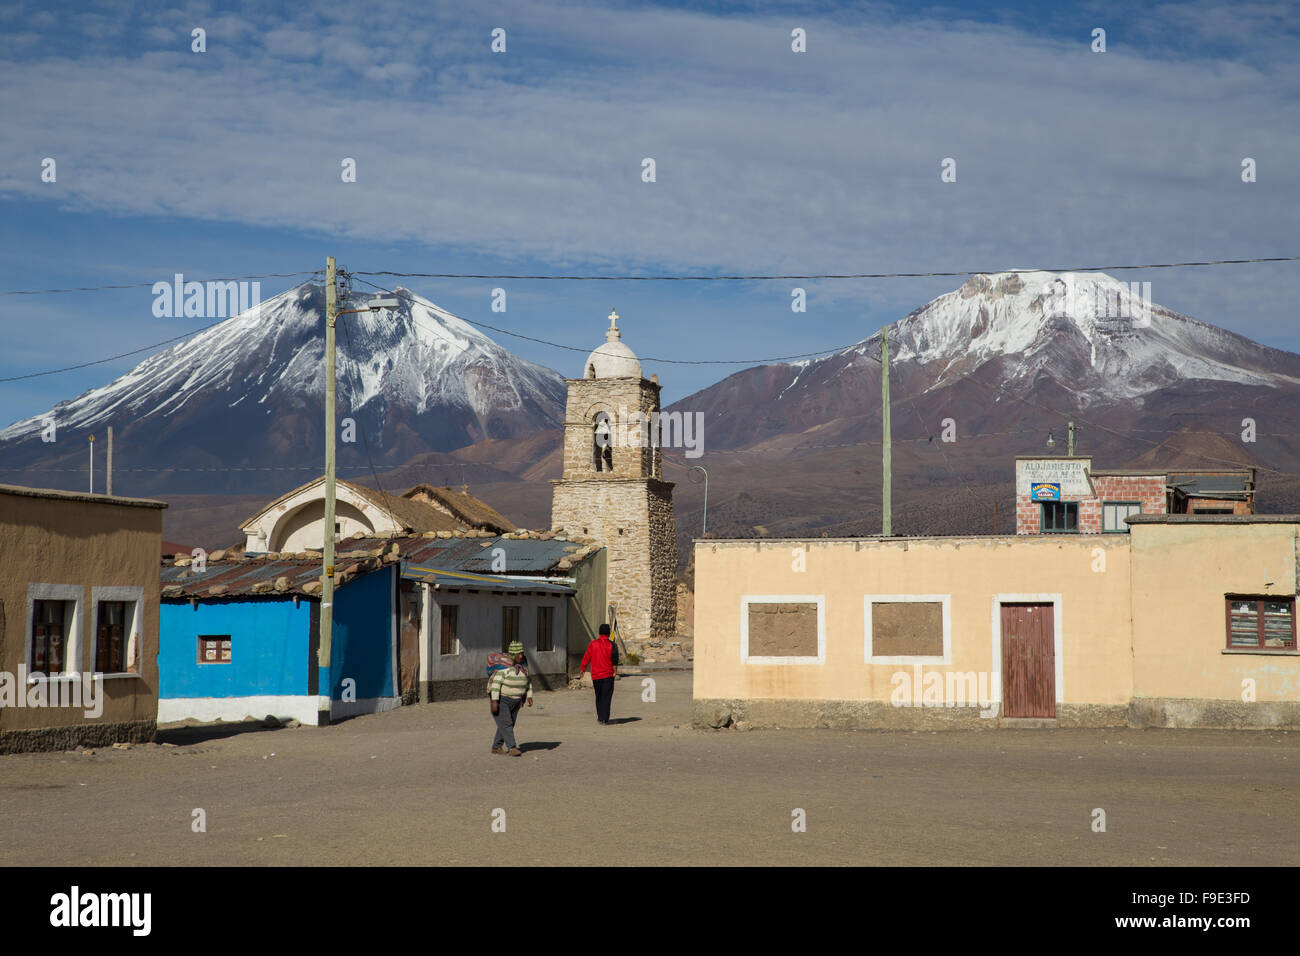 Photographie de la place de la ville et l'église dans le parc national de Sajama Sajama en Bolivie,. Banque D'Images